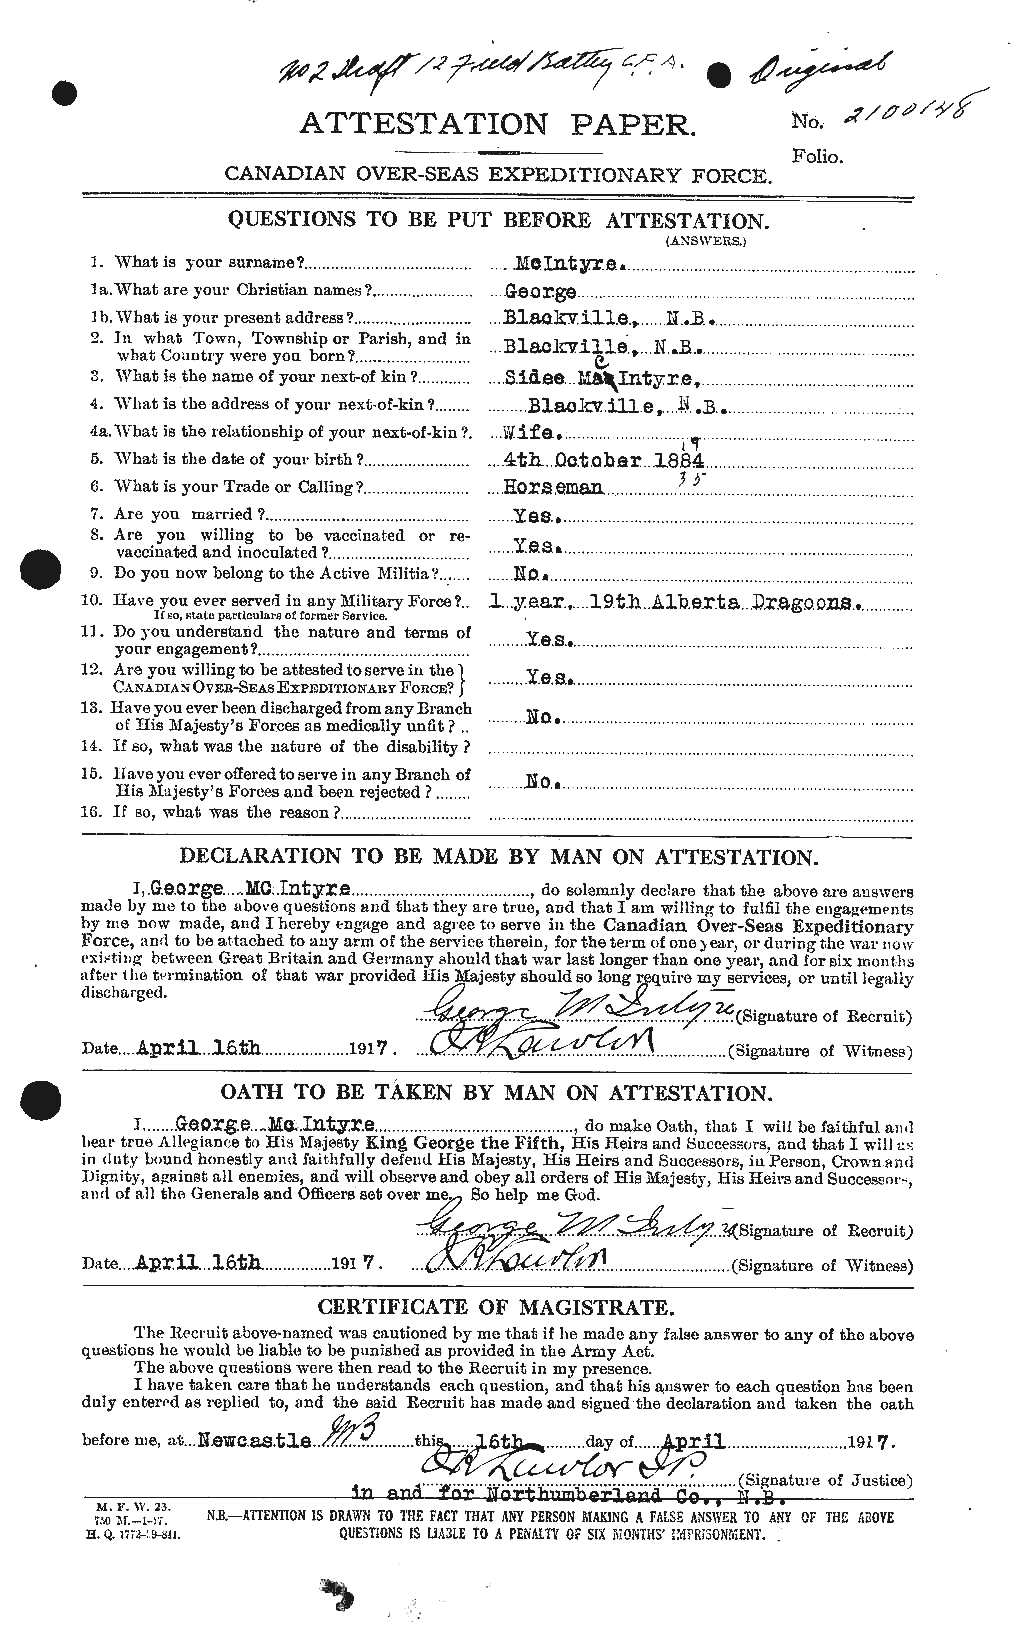 Dossiers du Personnel de la Première Guerre mondiale - CEC 527387a